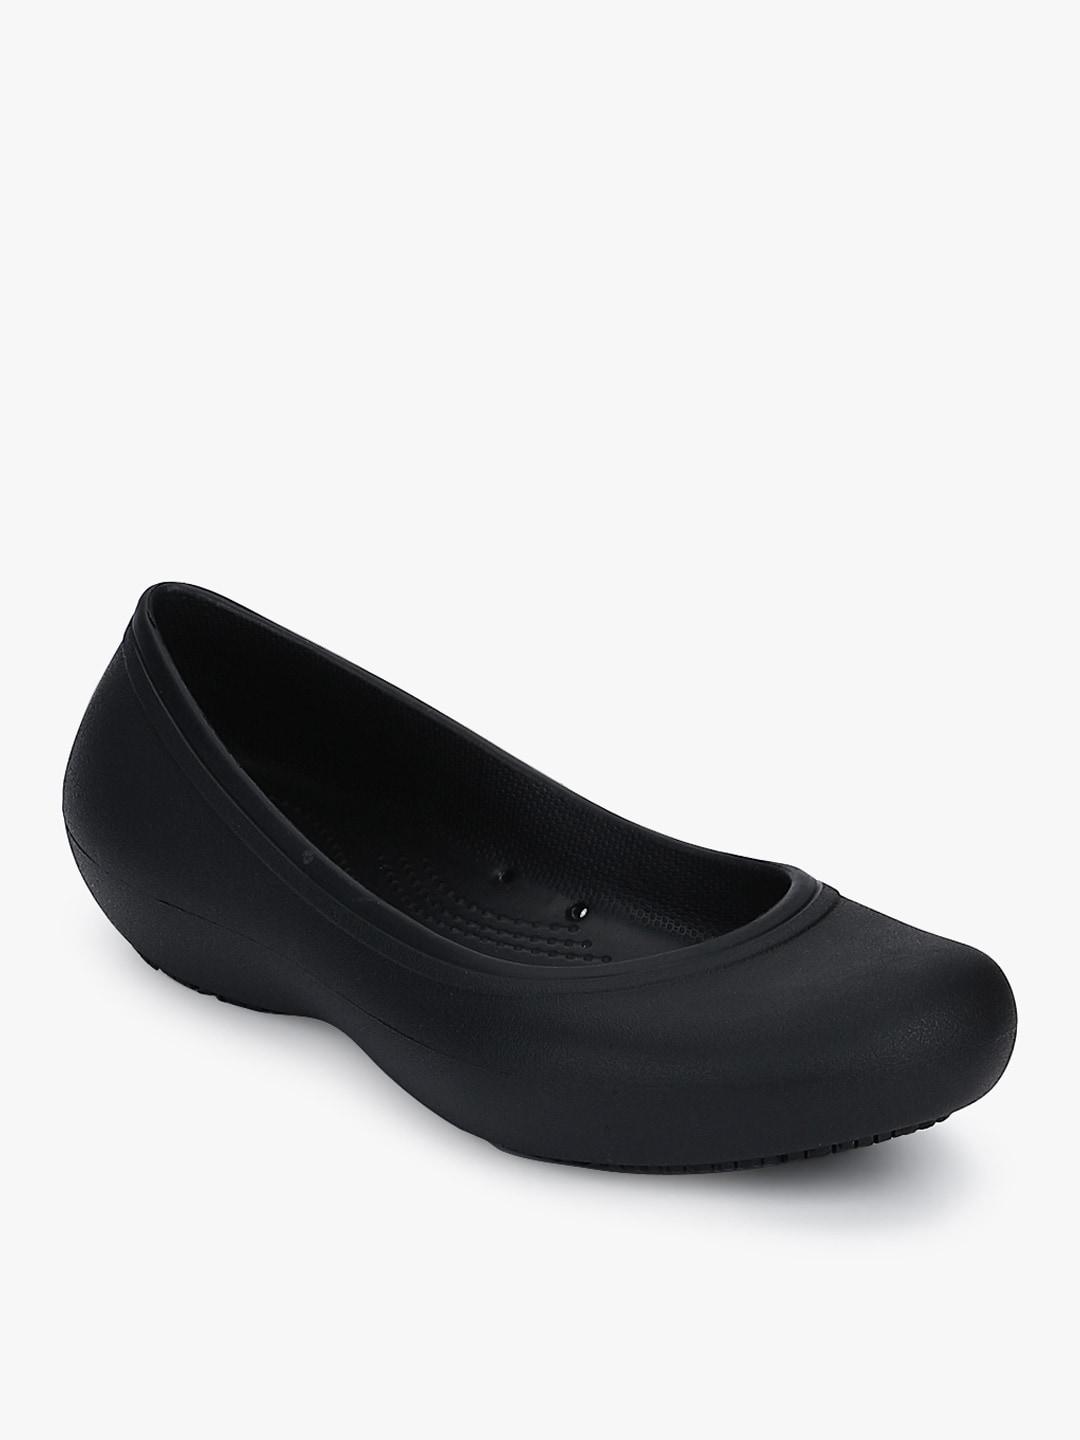 crocs-black-solid-sandals